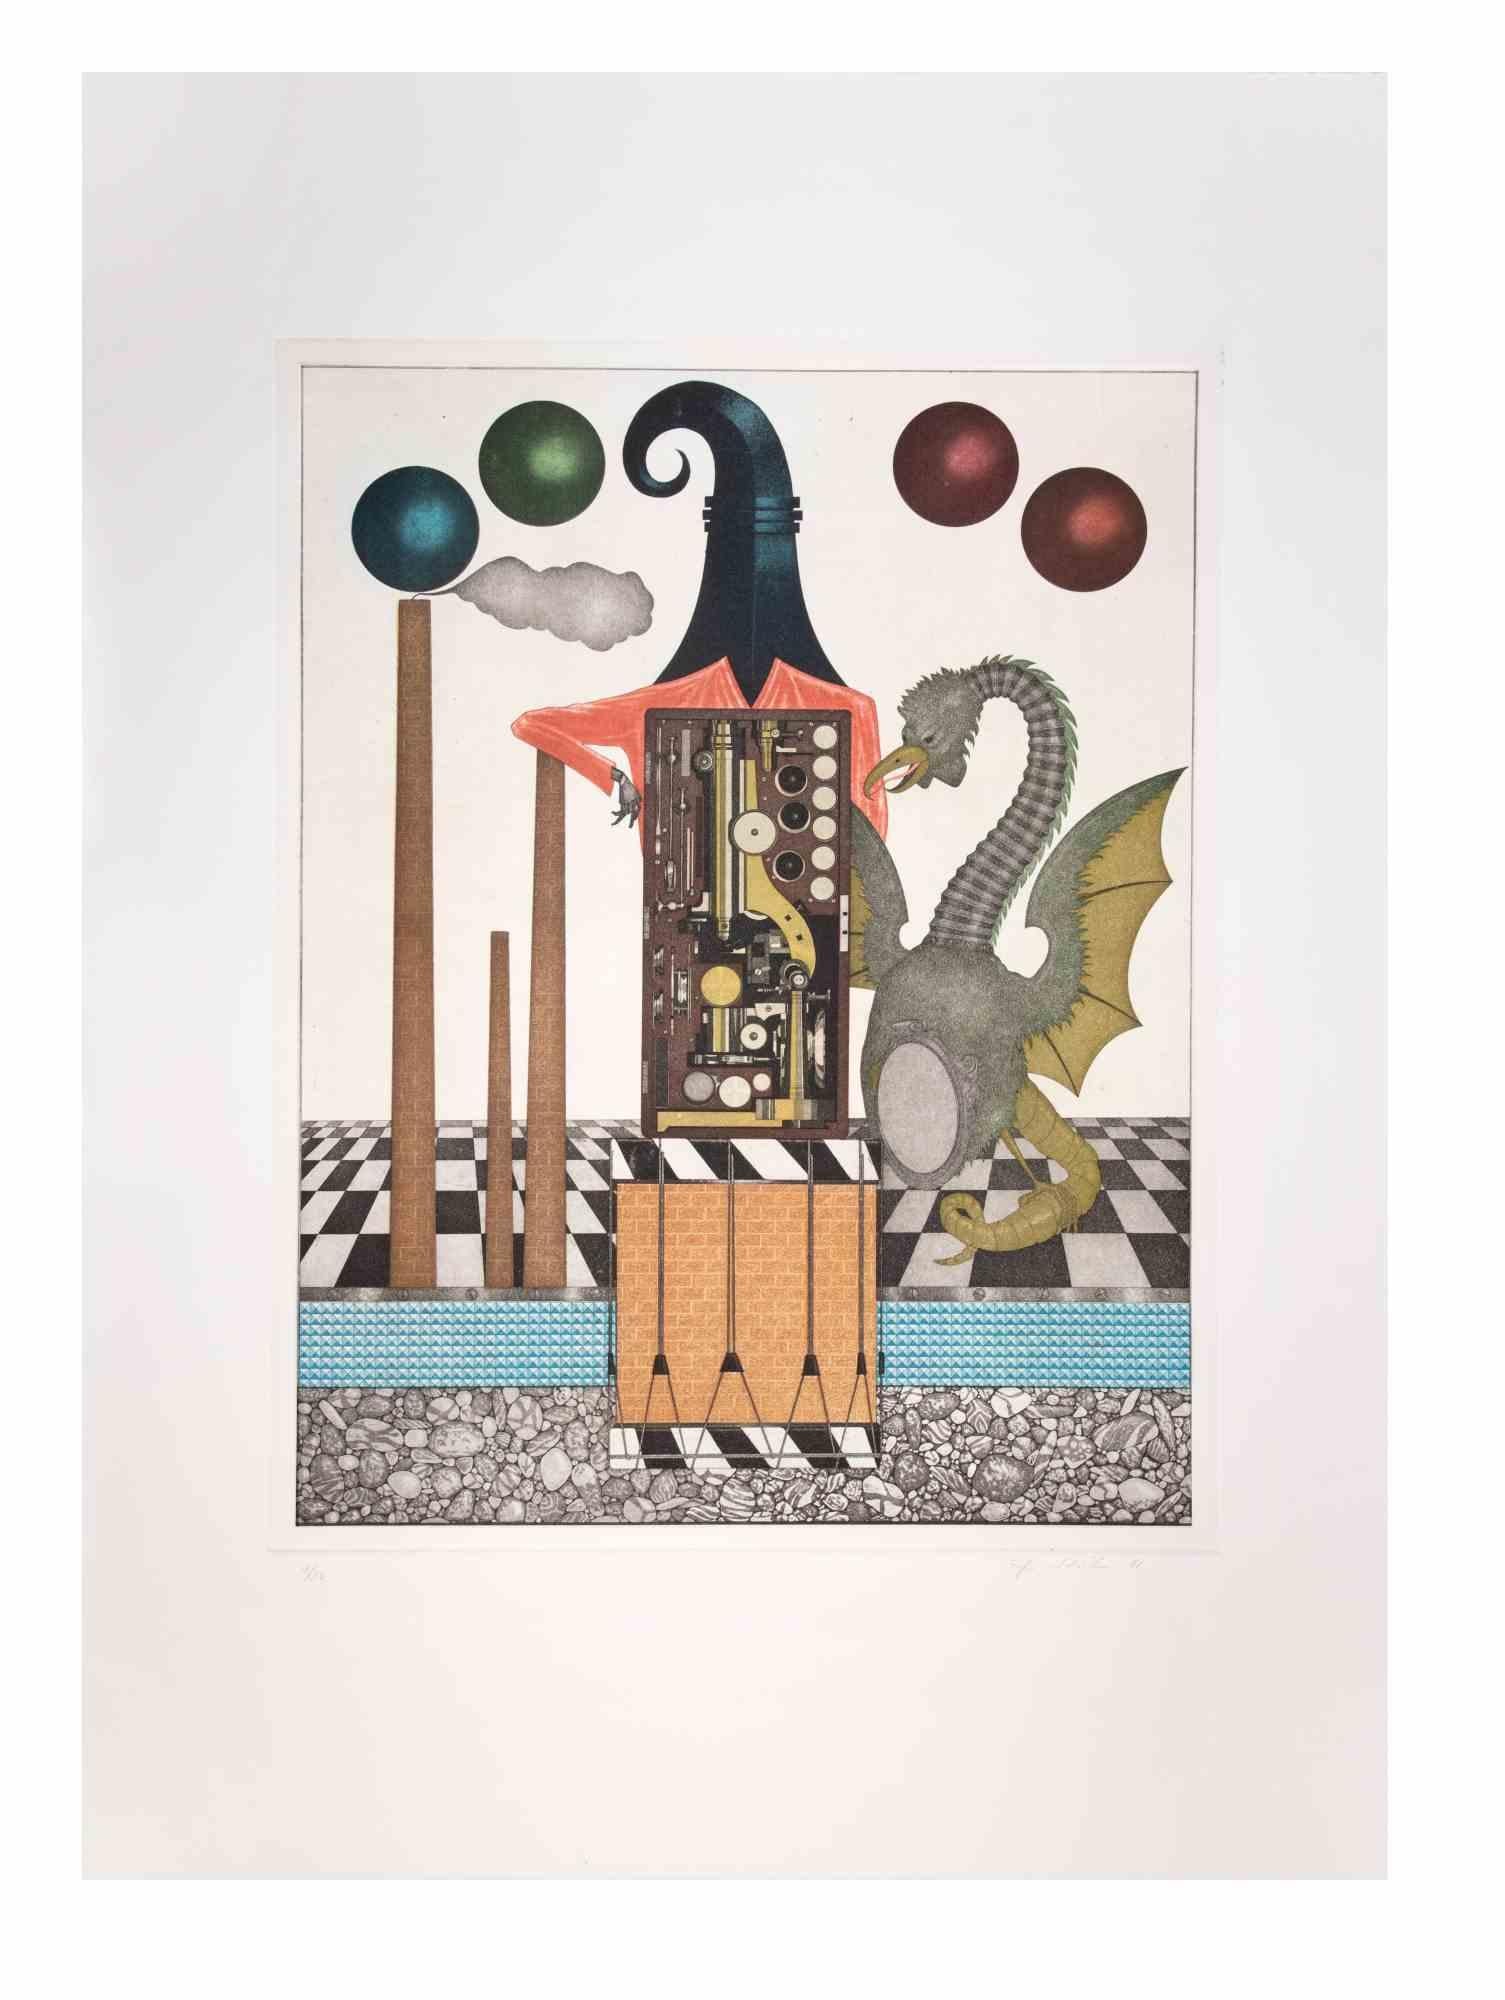 Basilisk est une œuvre d'art contemporain réalisée par l'artiste Fifo Stricker en 1985.

Aquatinte et gravure en couleurs mixtes. 

Signé et daté à la main par l'artiste dans la marge inférieure droite.

Numéroté dans la marge inférieure gauche.